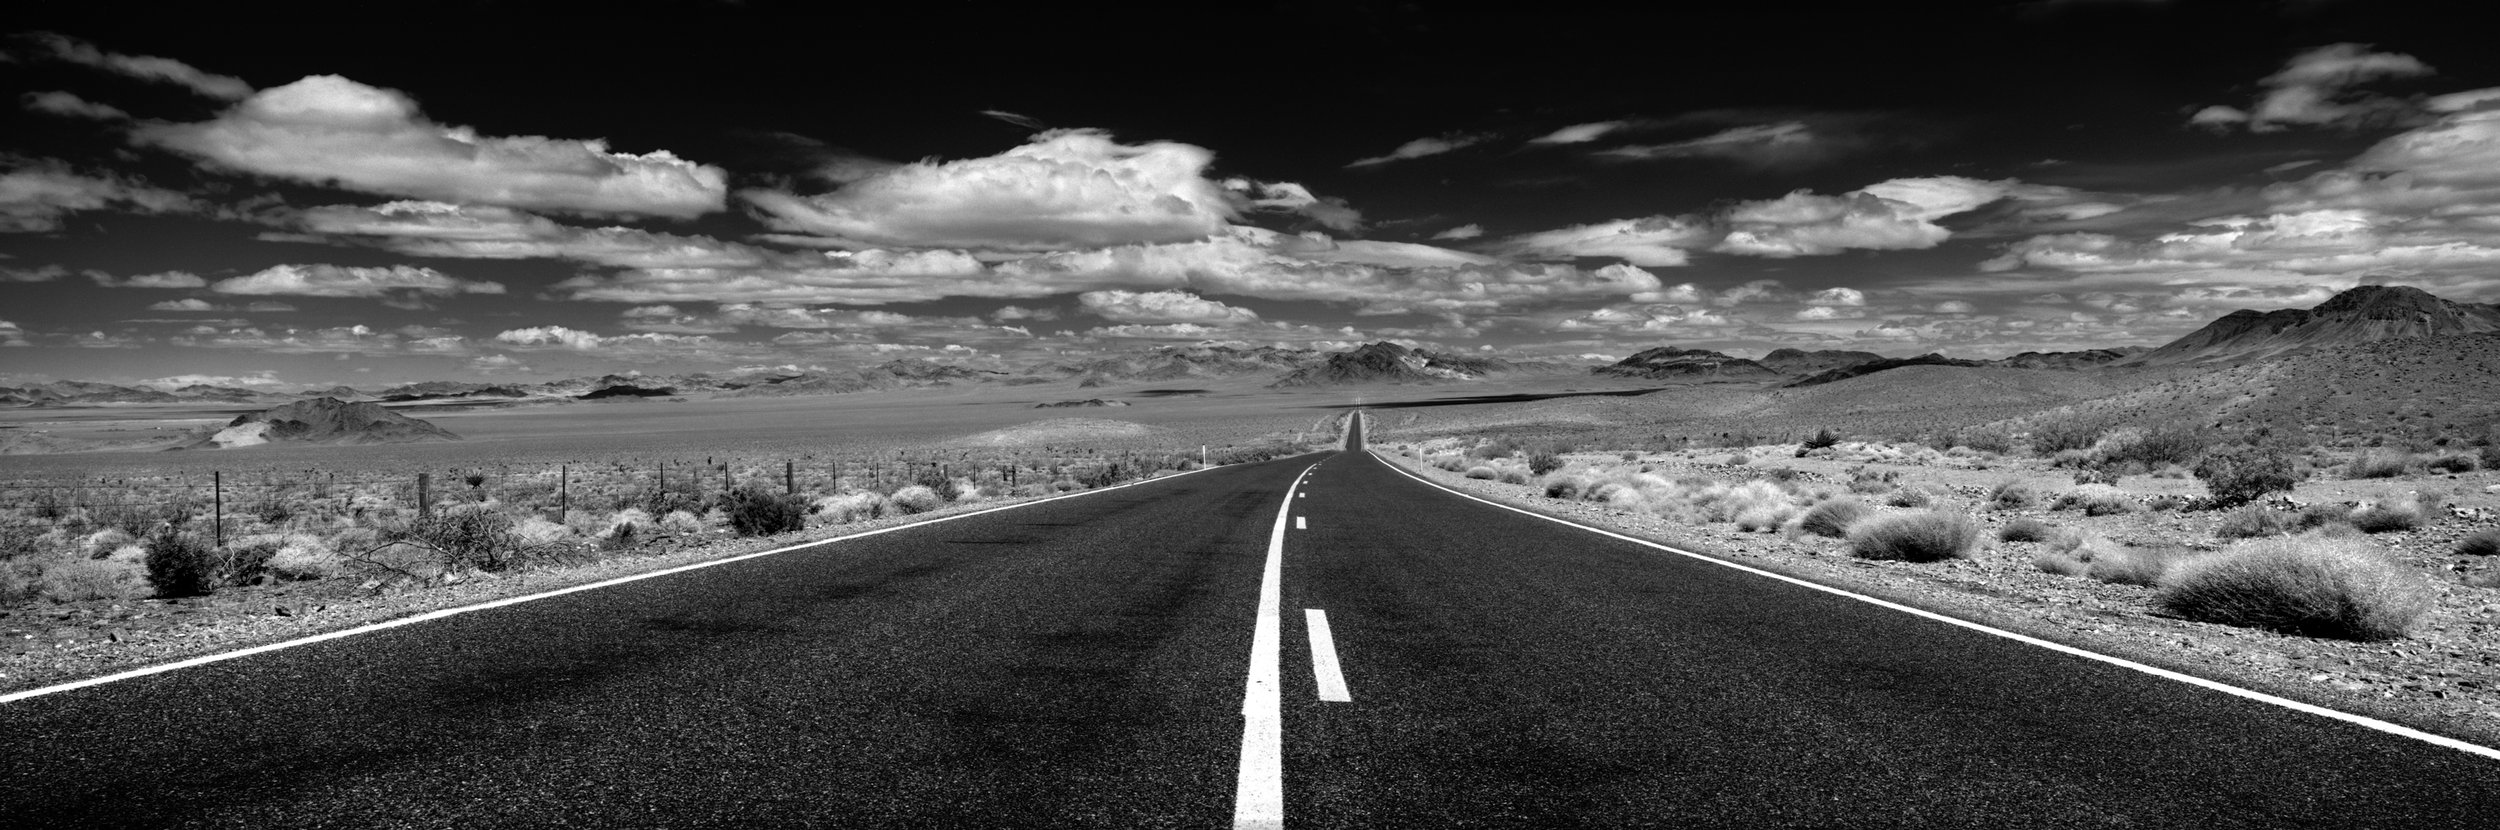   Highway 160. Nevada. May 11, 2010  